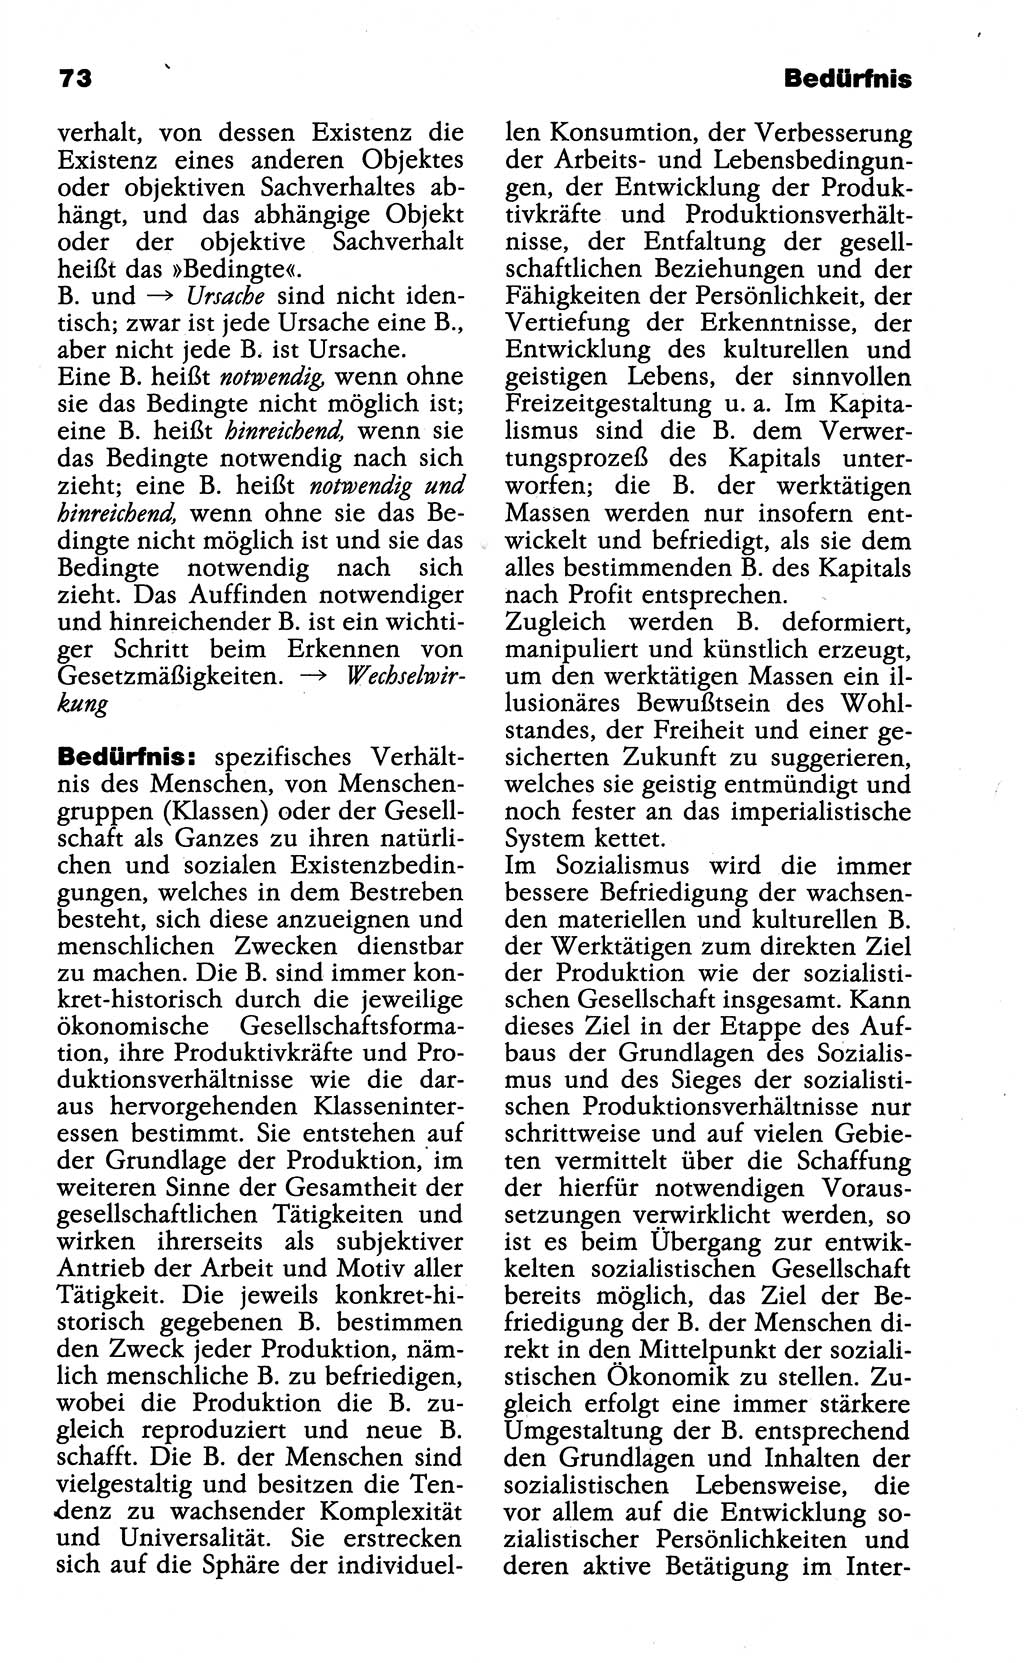 Wörterbuch der marxistisch-leninistischen Philosophie [Deutsche Demokratische Republik (DDR)] 1985, Seite 73 (Wb. ML Phil. DDR 1985, S. 73)